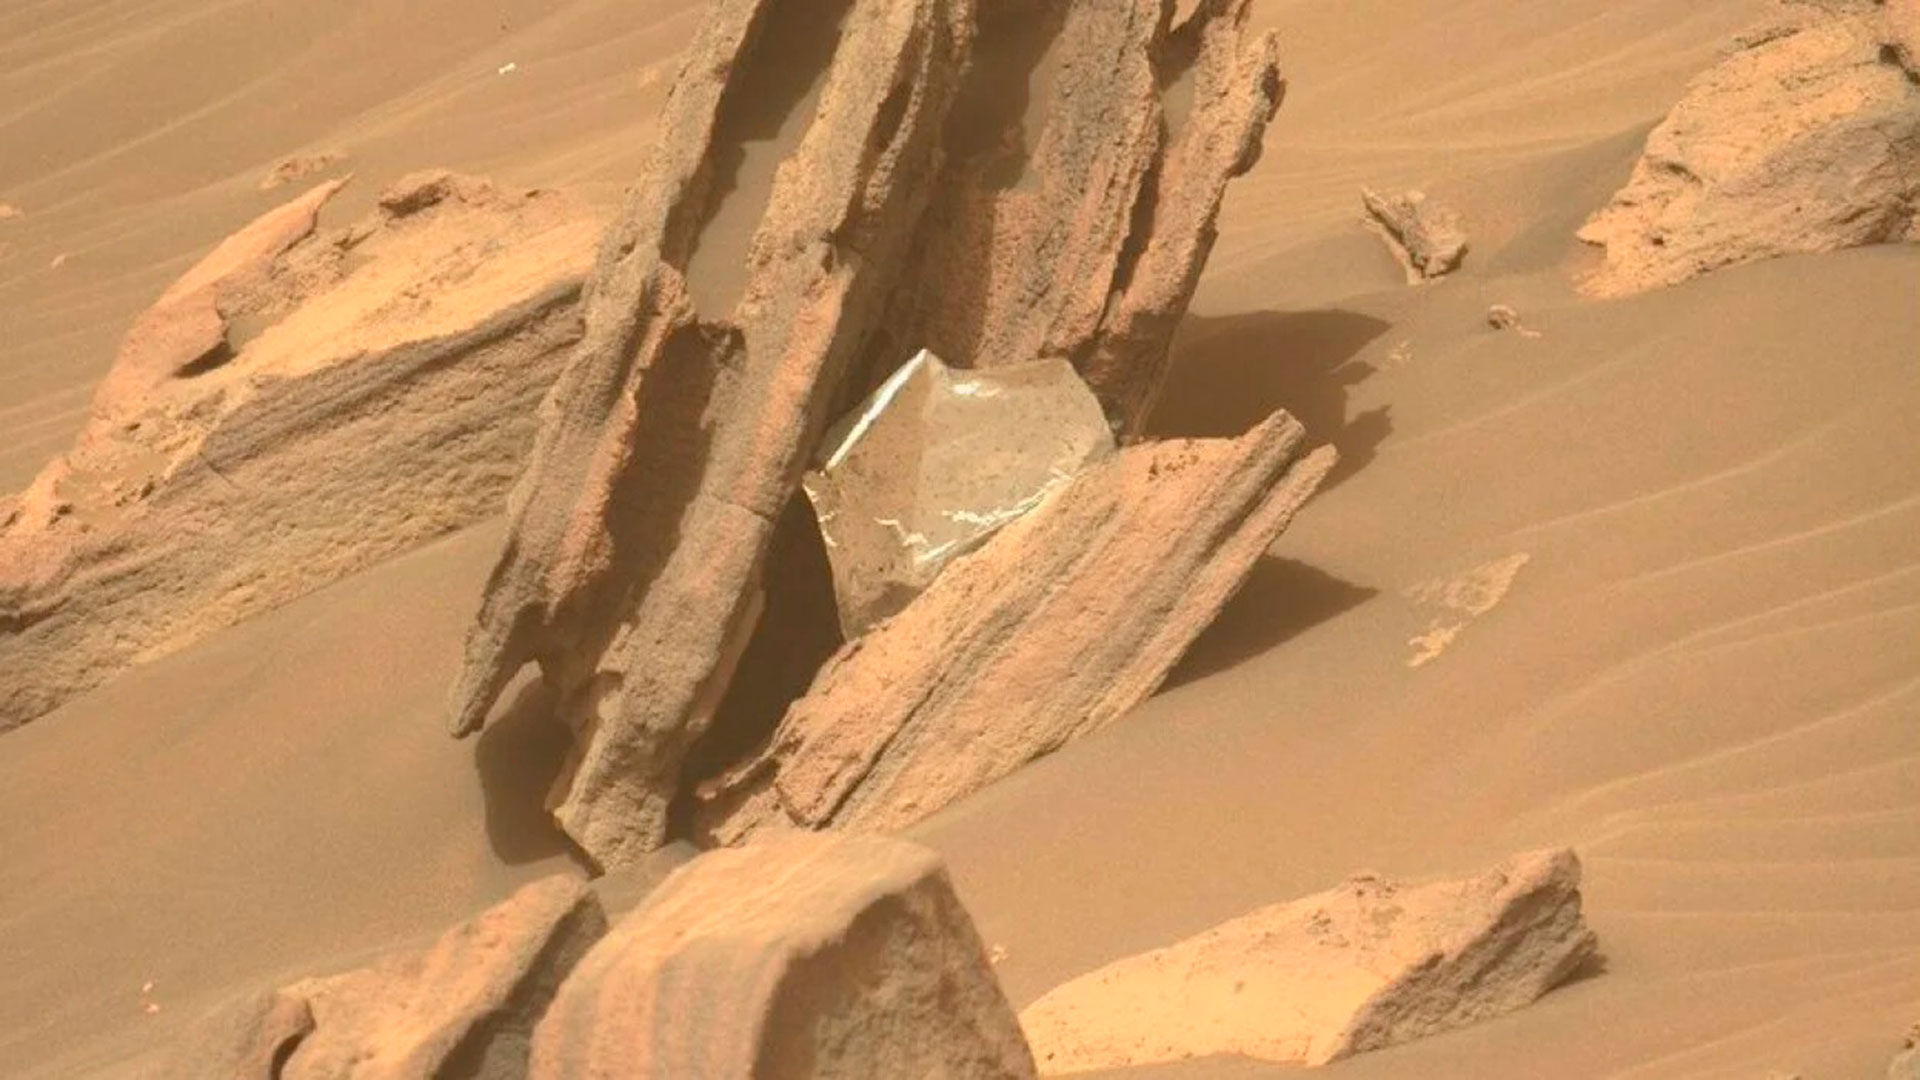 Il rover ha raggiunto la base del delta ad aprile.  Presto scoprì rocce grigie e sottili chiamate scisti, che avrebbero potuto formarsi da sedimenti depositati da un fiume o un lago che si muoveva lentamente.